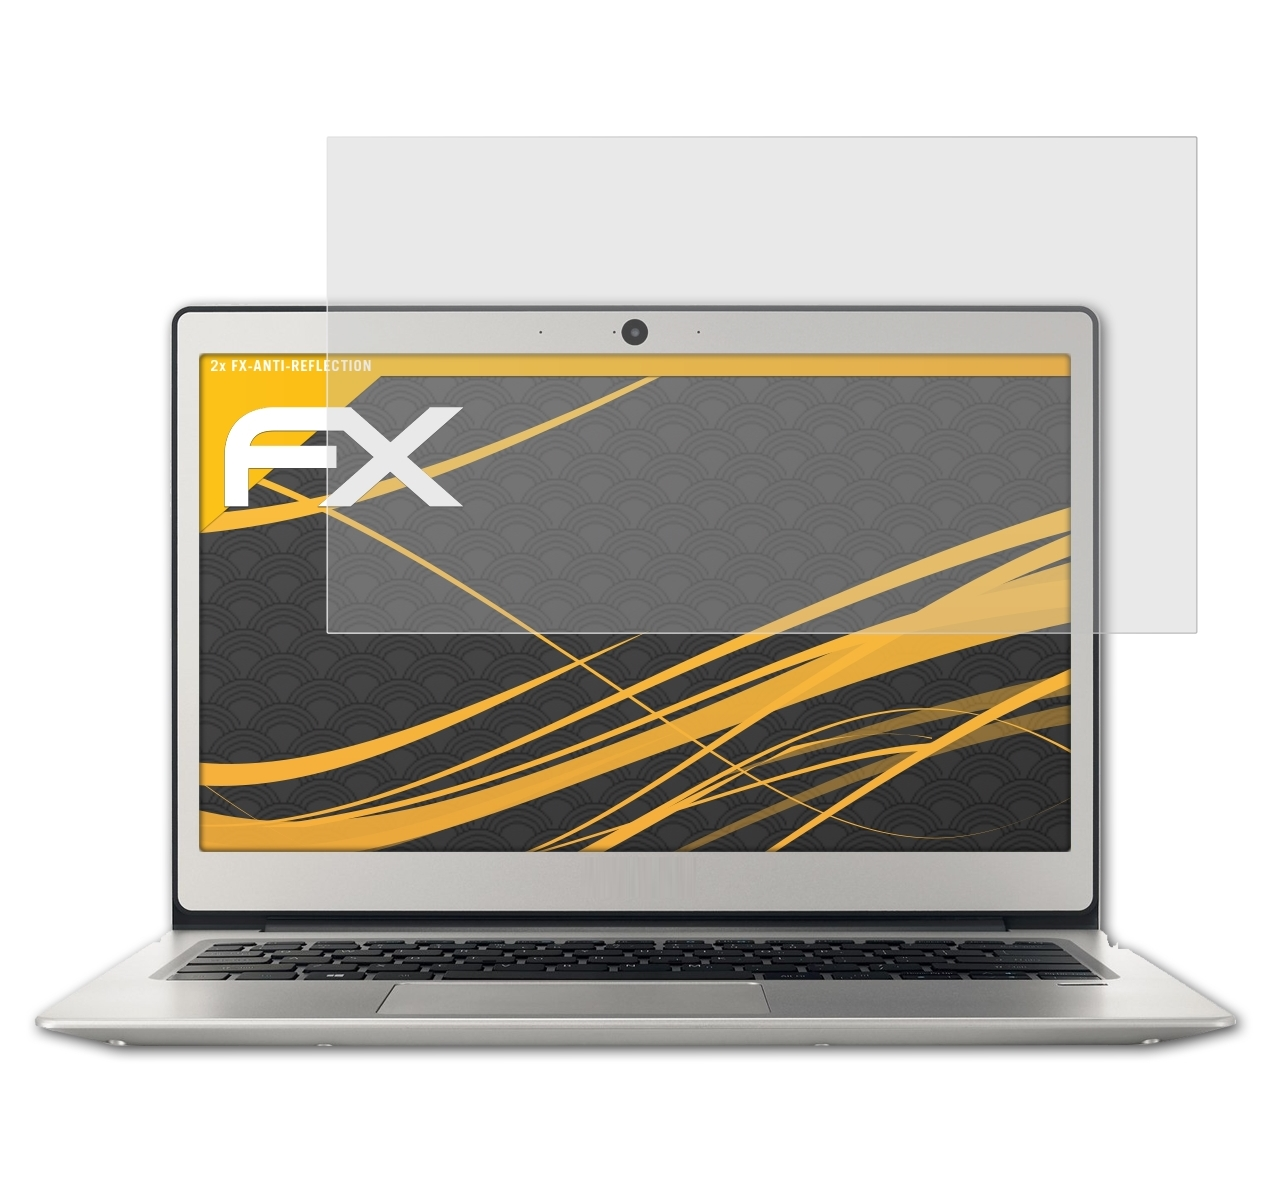 ATFOLIX 2x FX-Antireflex 1 Swift (13.3 inch)) Displayschutz(für Acer